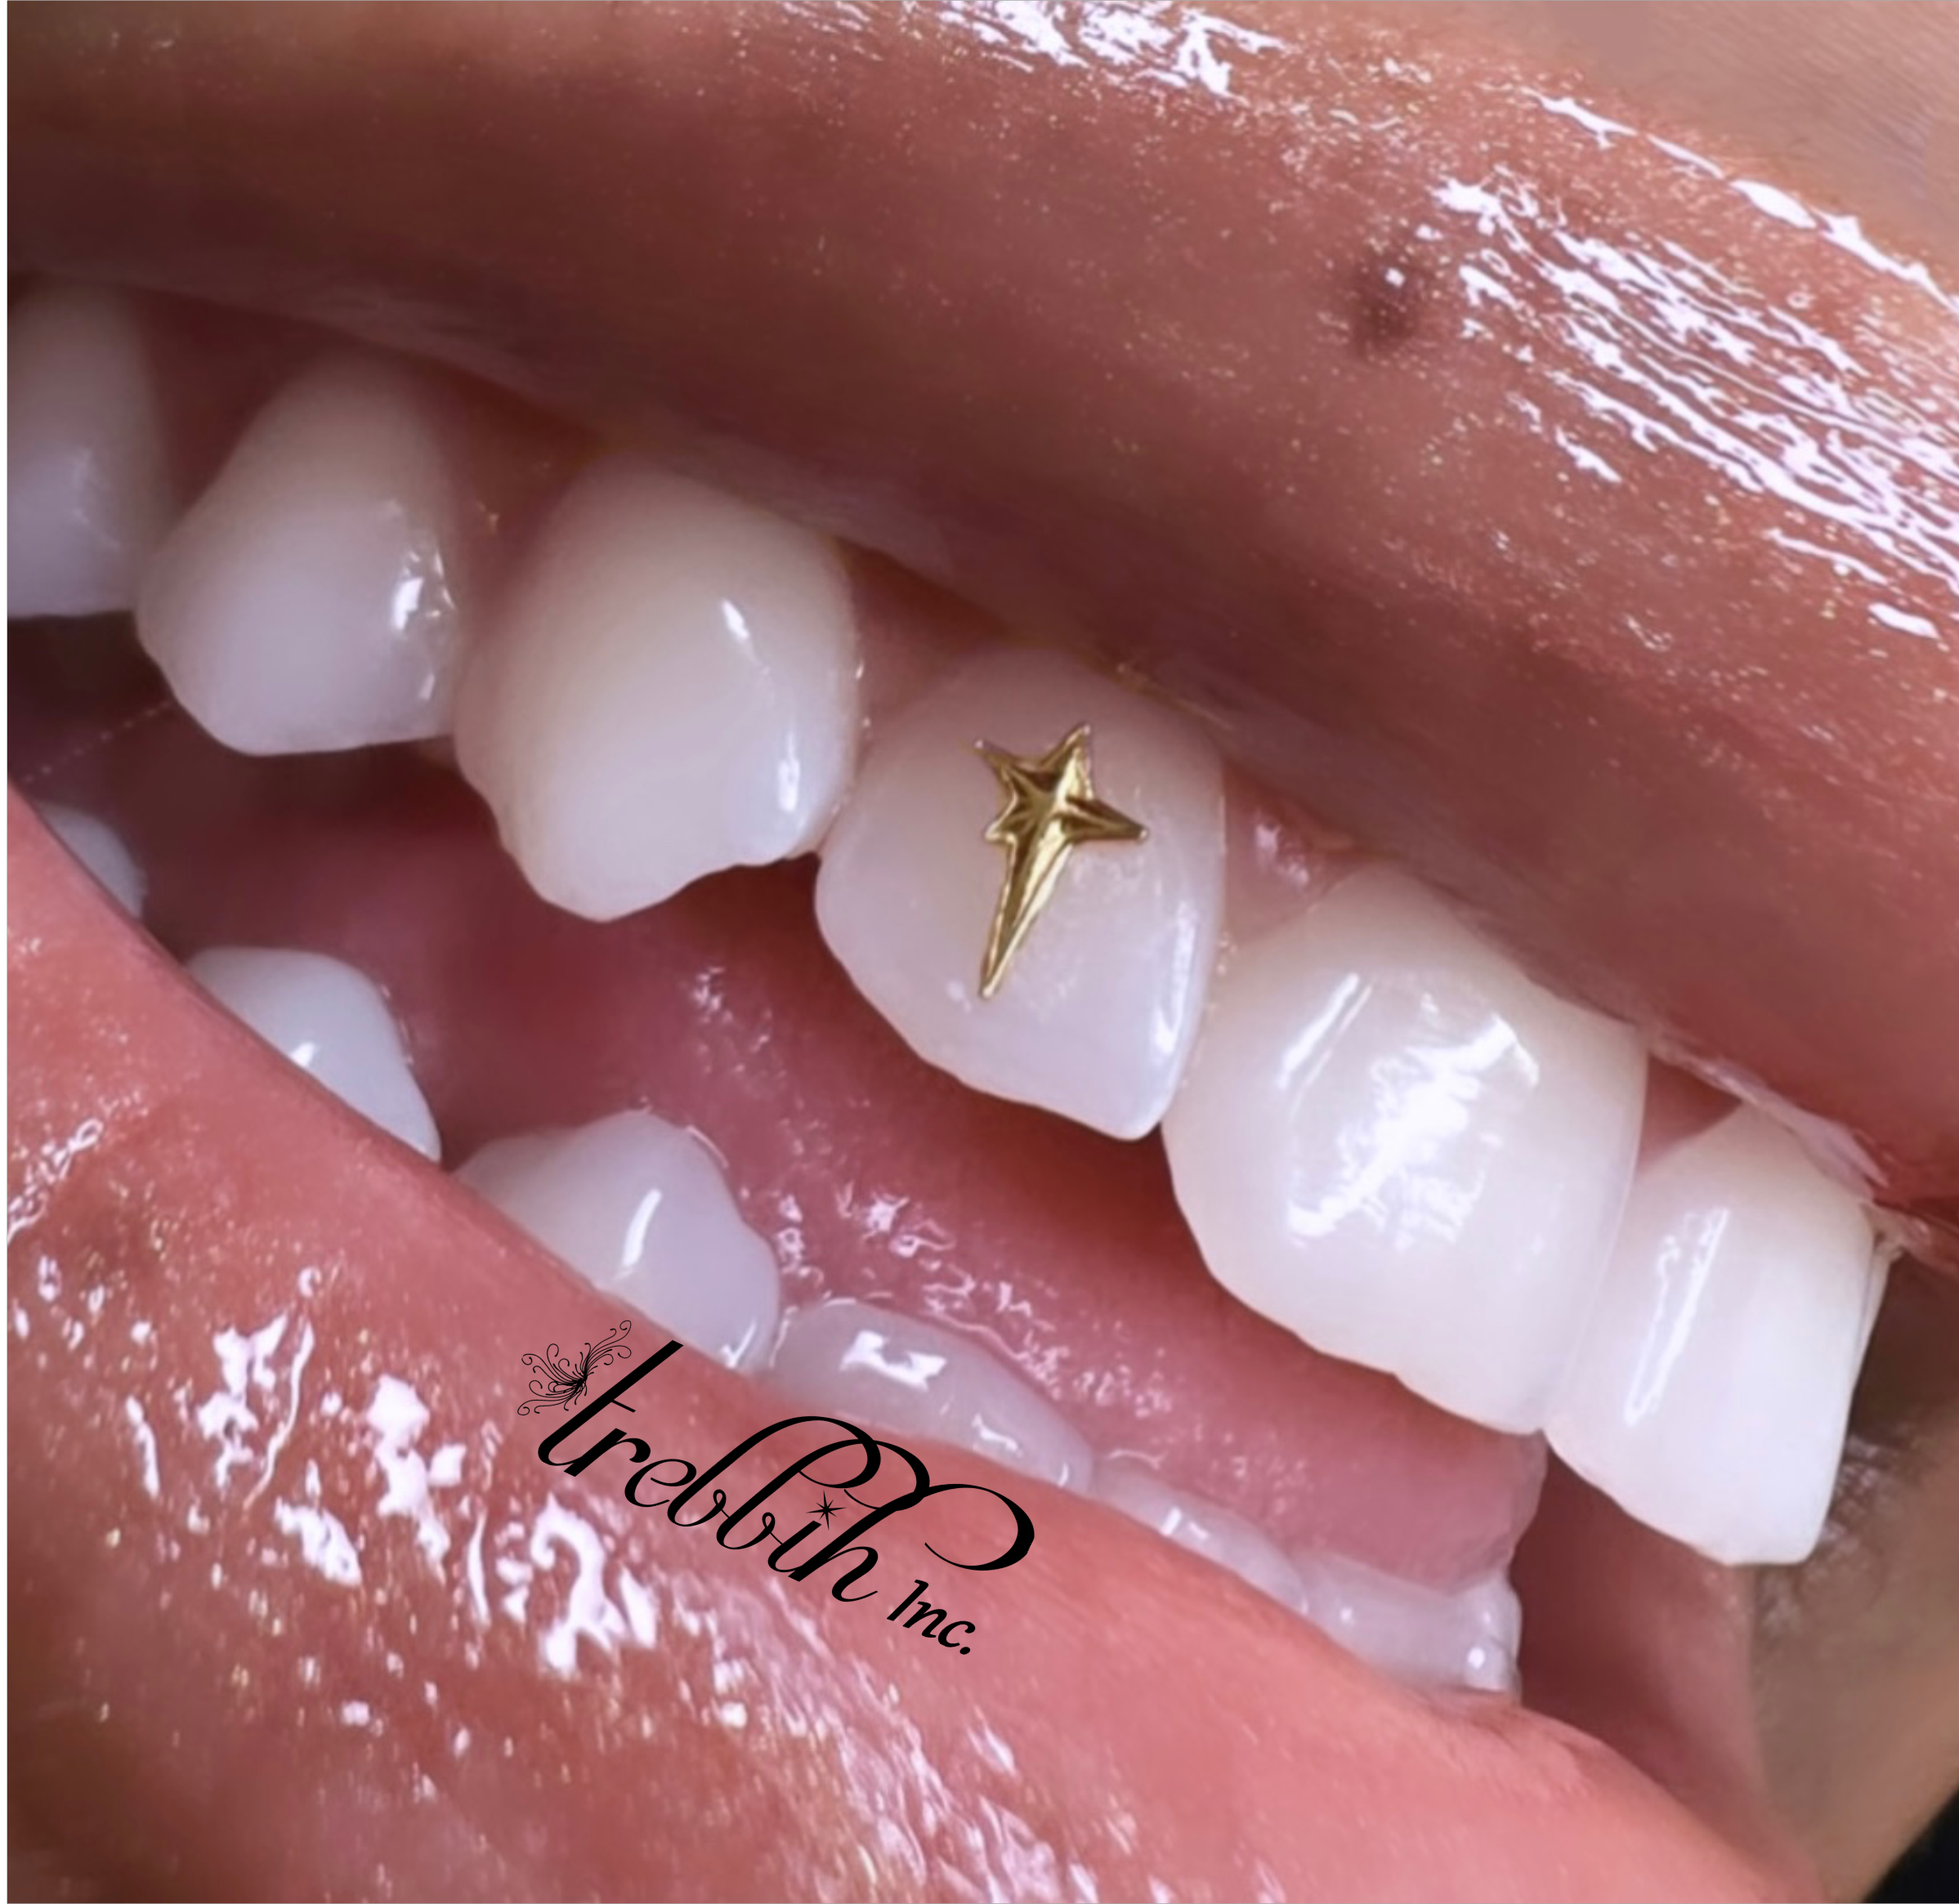 Tooth Gems – Tish Lyon